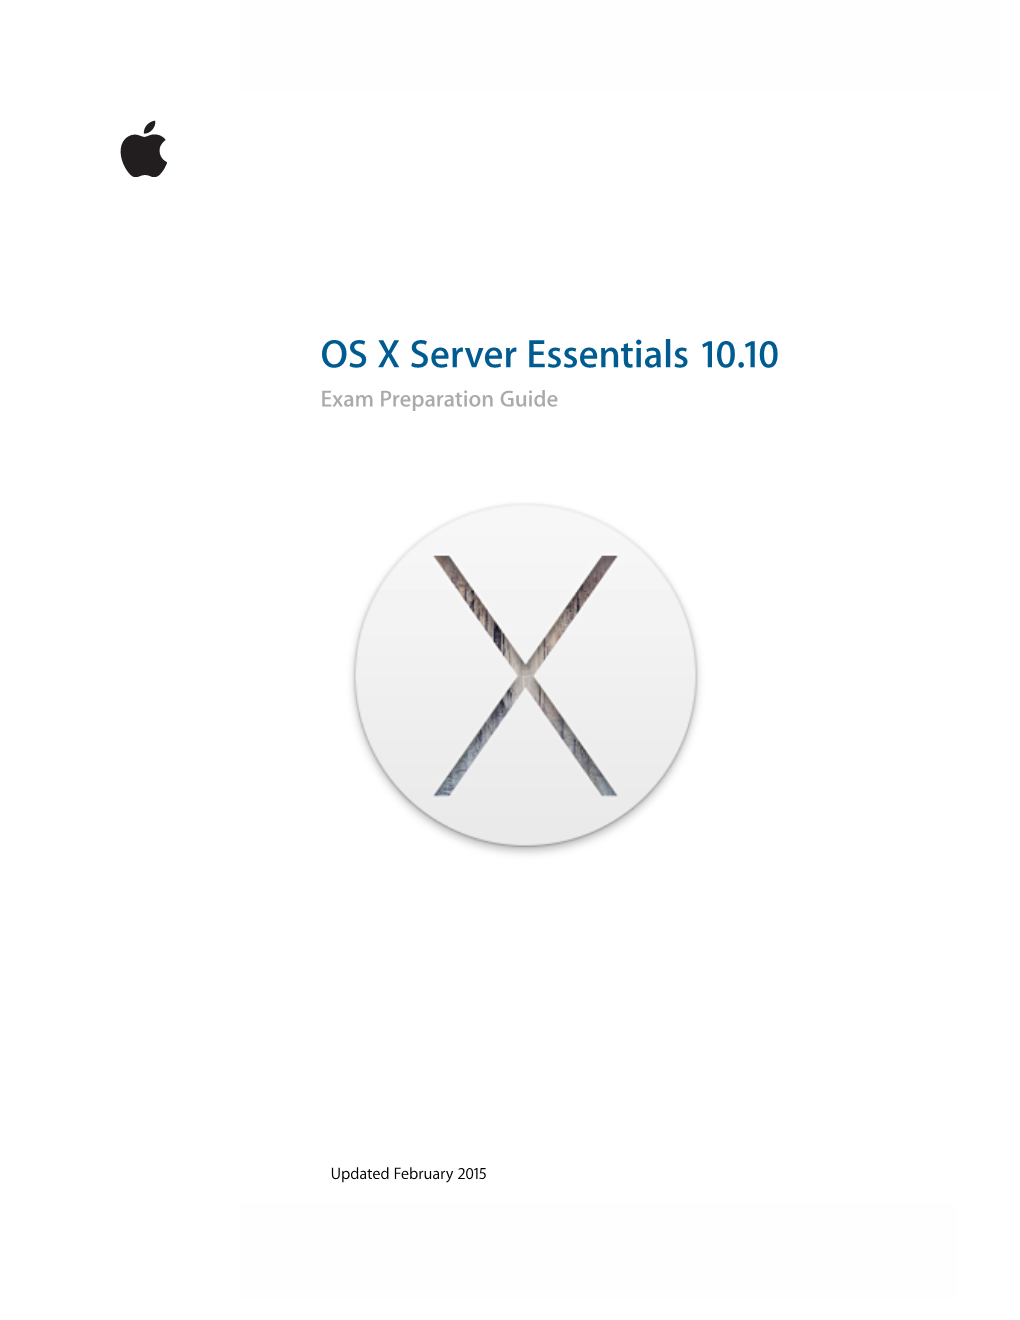 OS X Server Essentials 10.10 Exam Preparation Guide